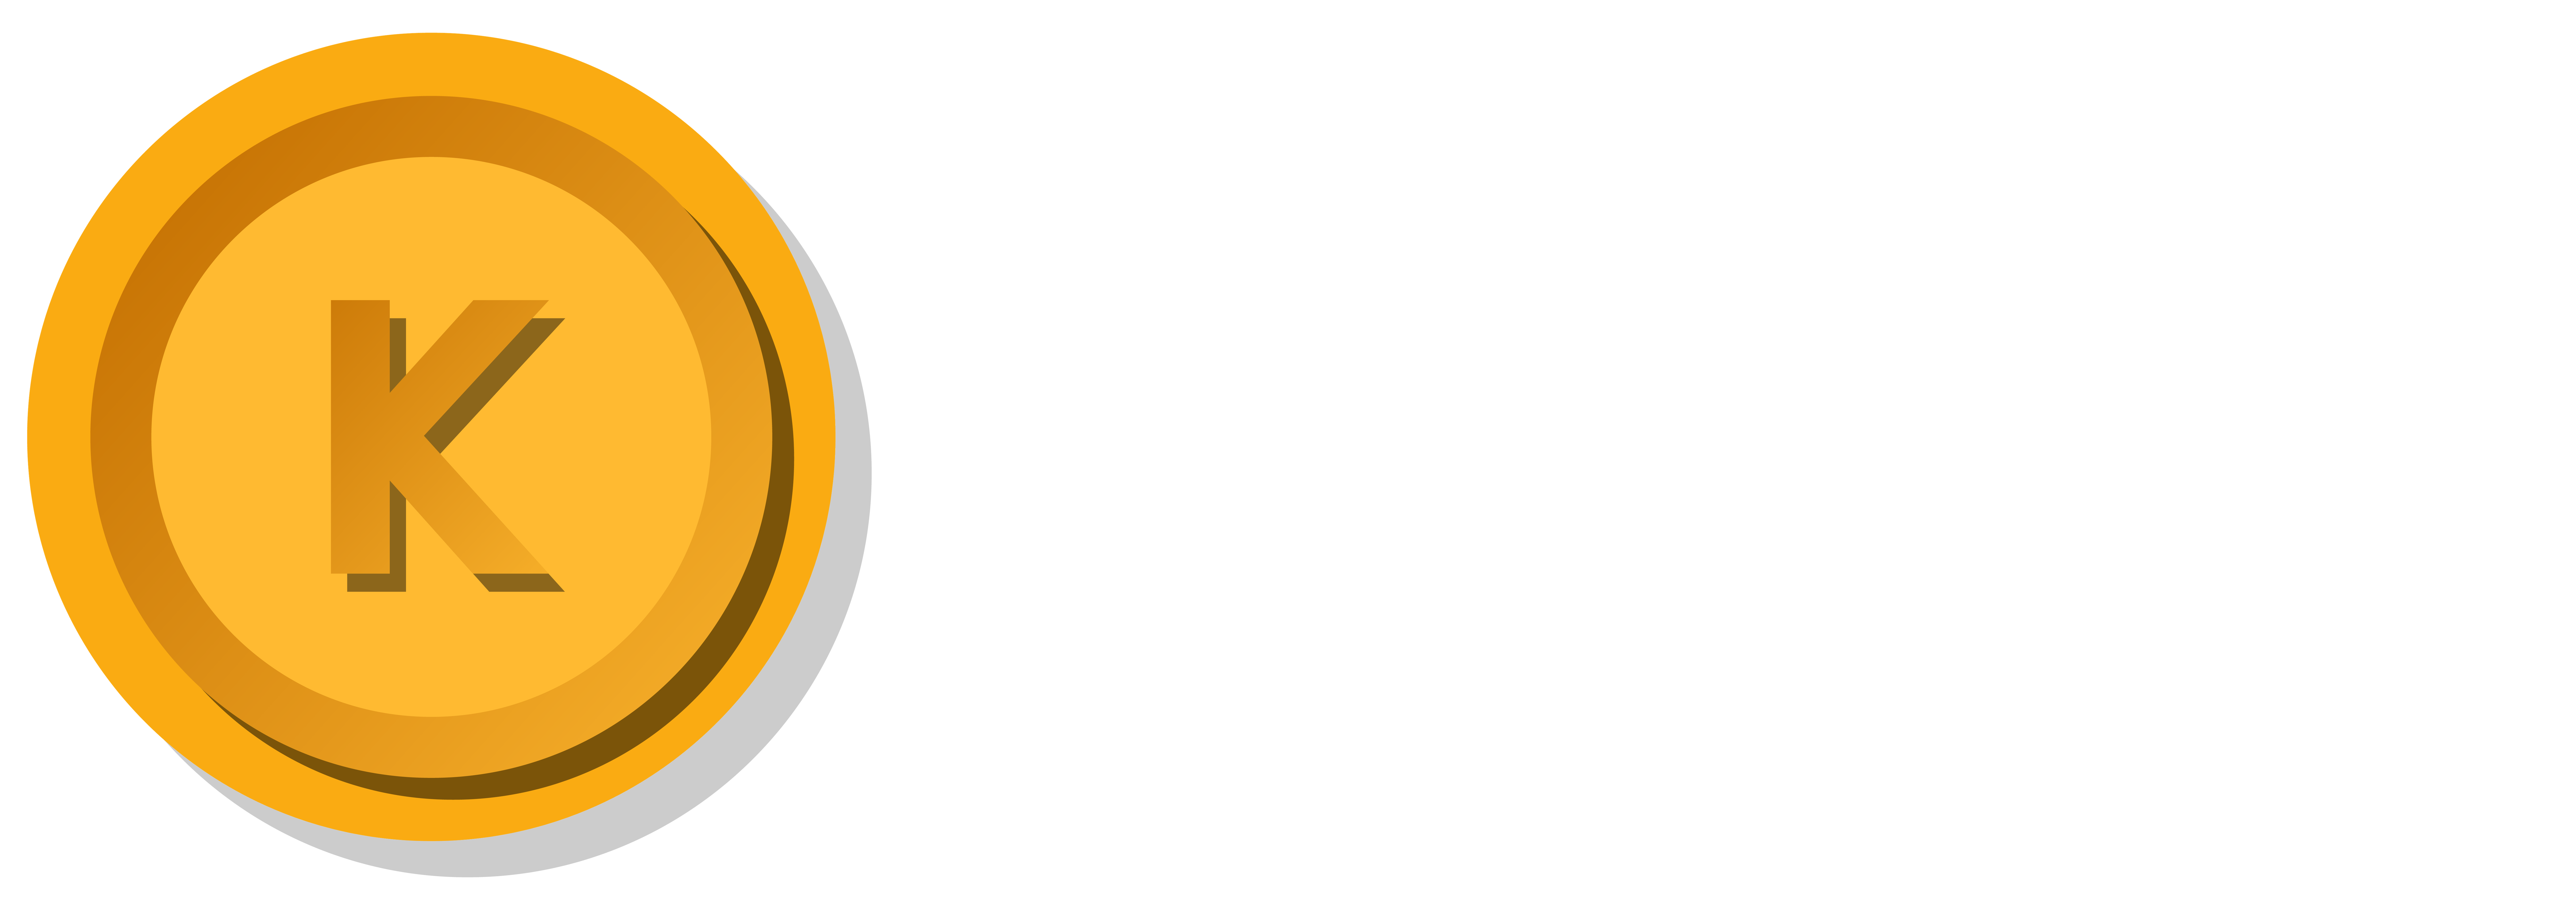 Krypto-casinoer